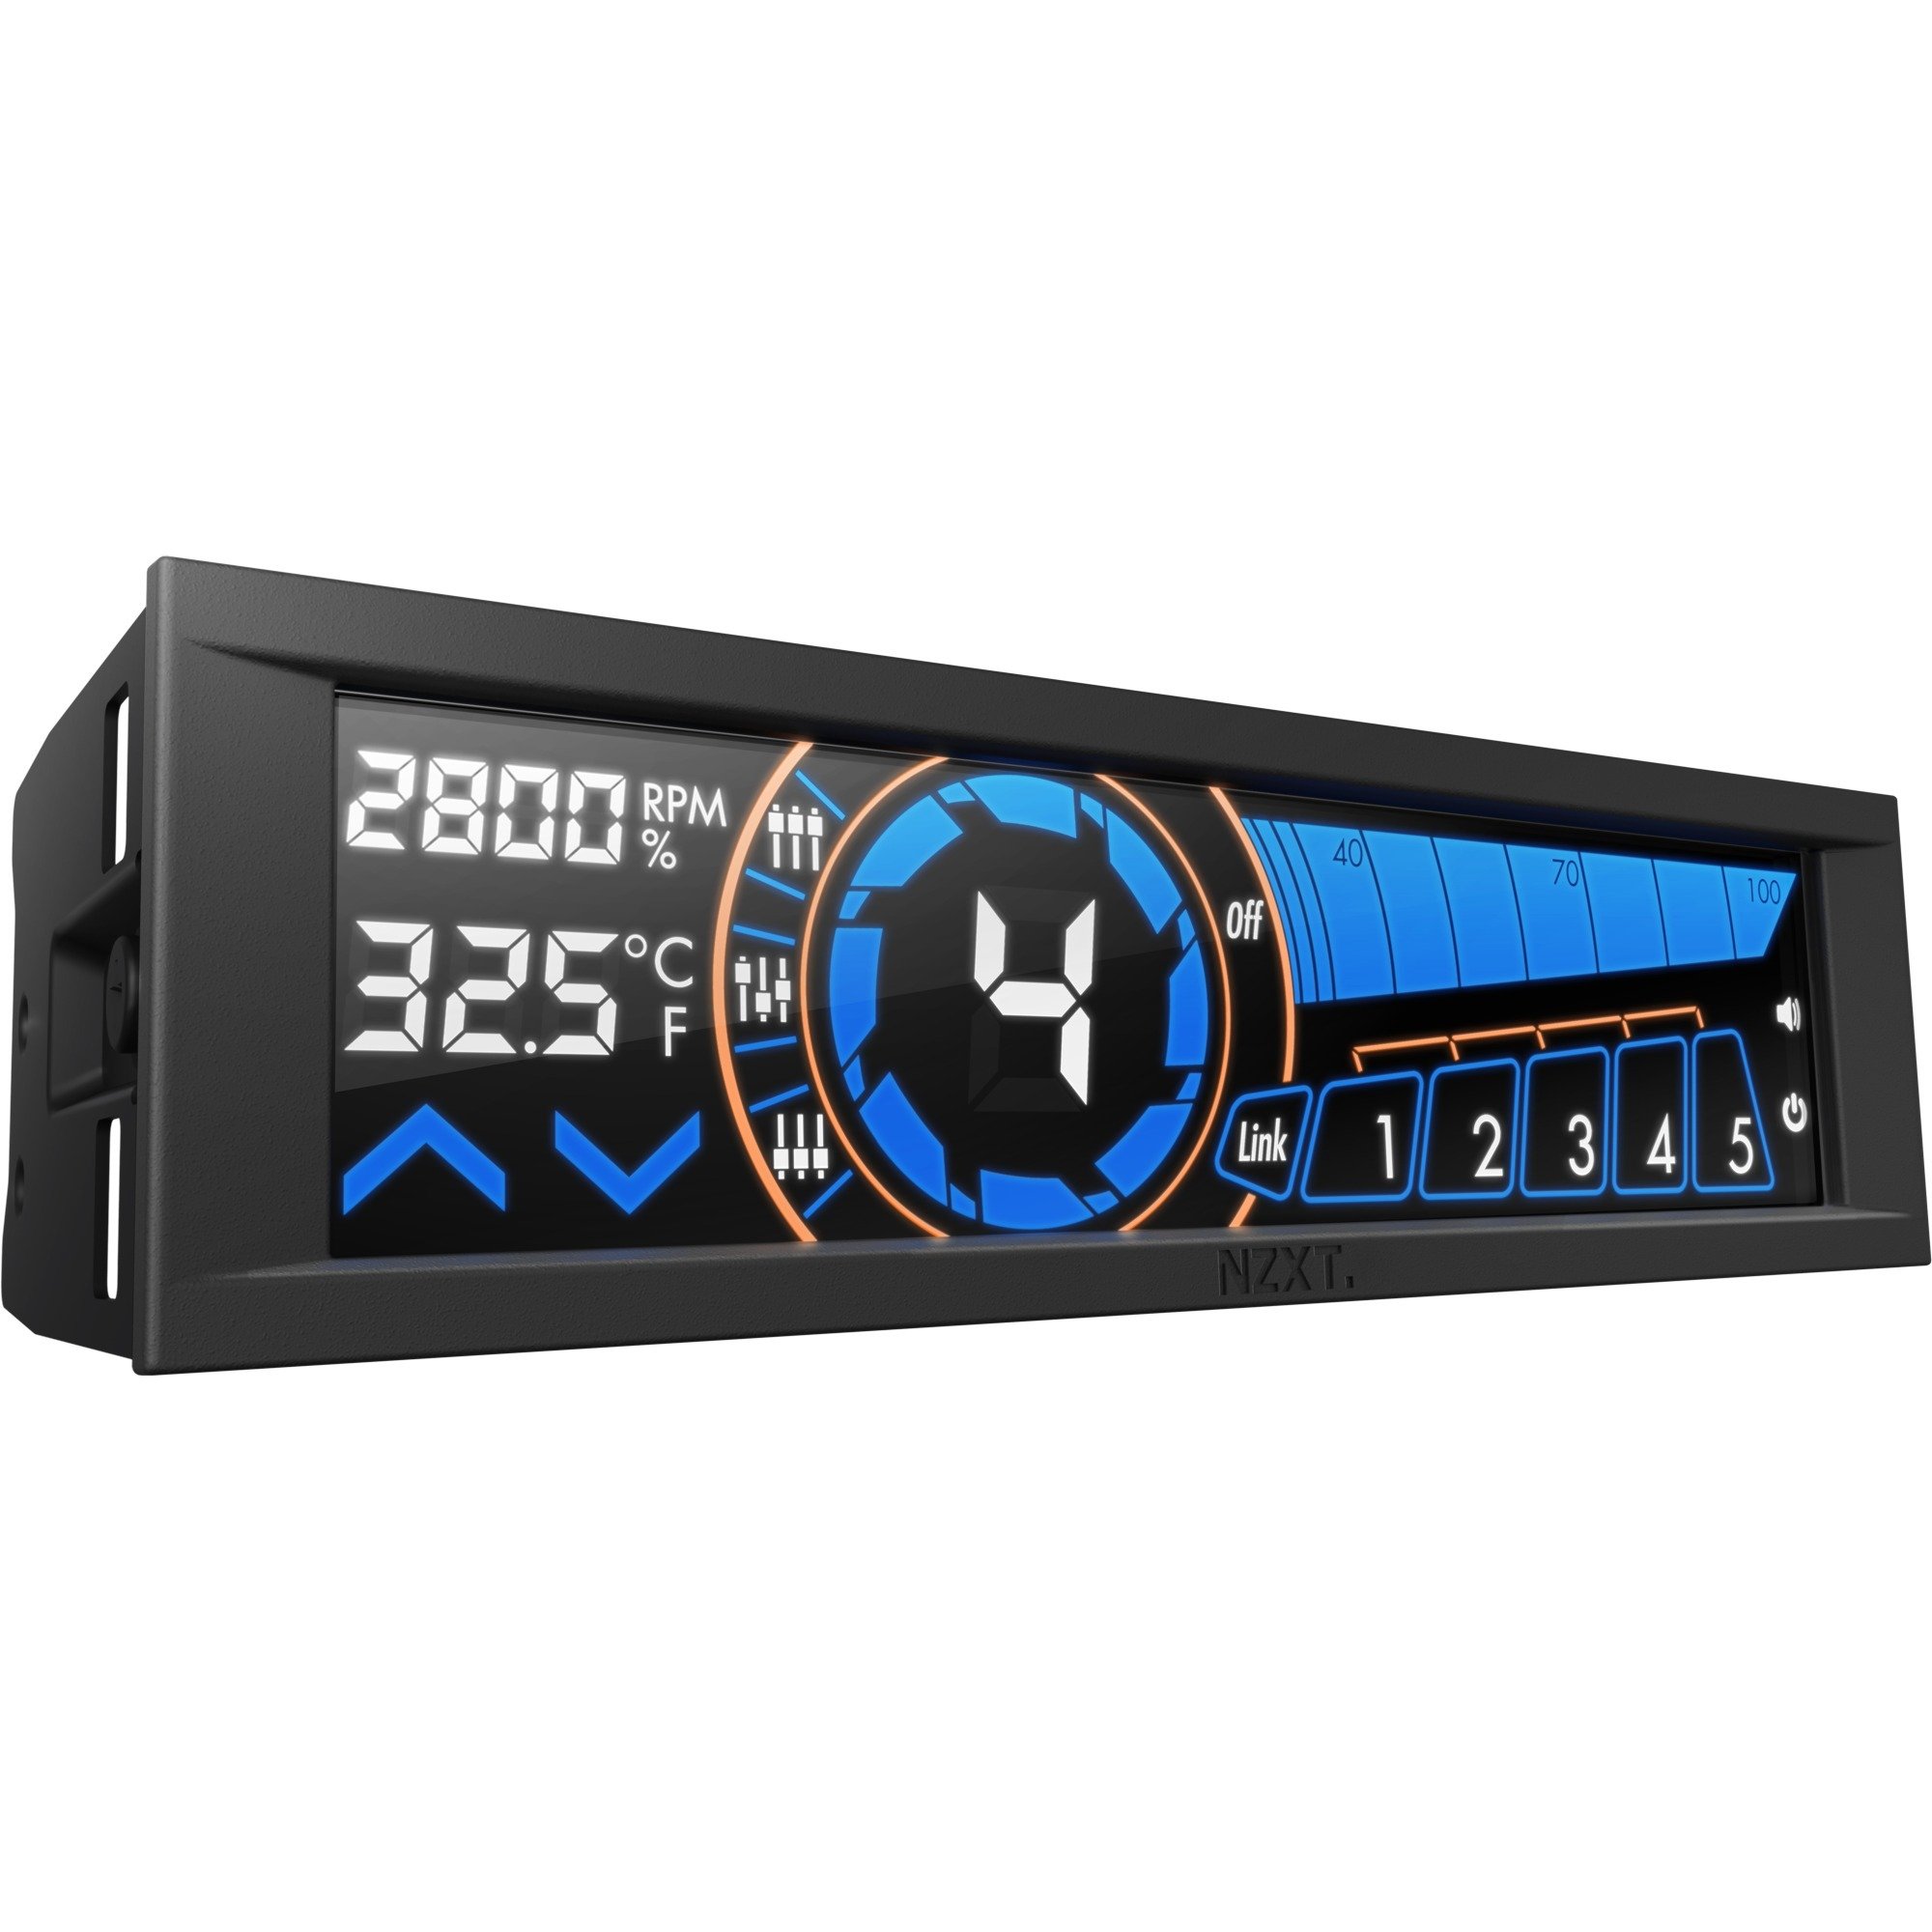 AC-SEN-3-B1 regulator prędkości wentylatora 5 kanały Czarny 13,7 cm (5.4") LCD, Sterowanie wentylatora